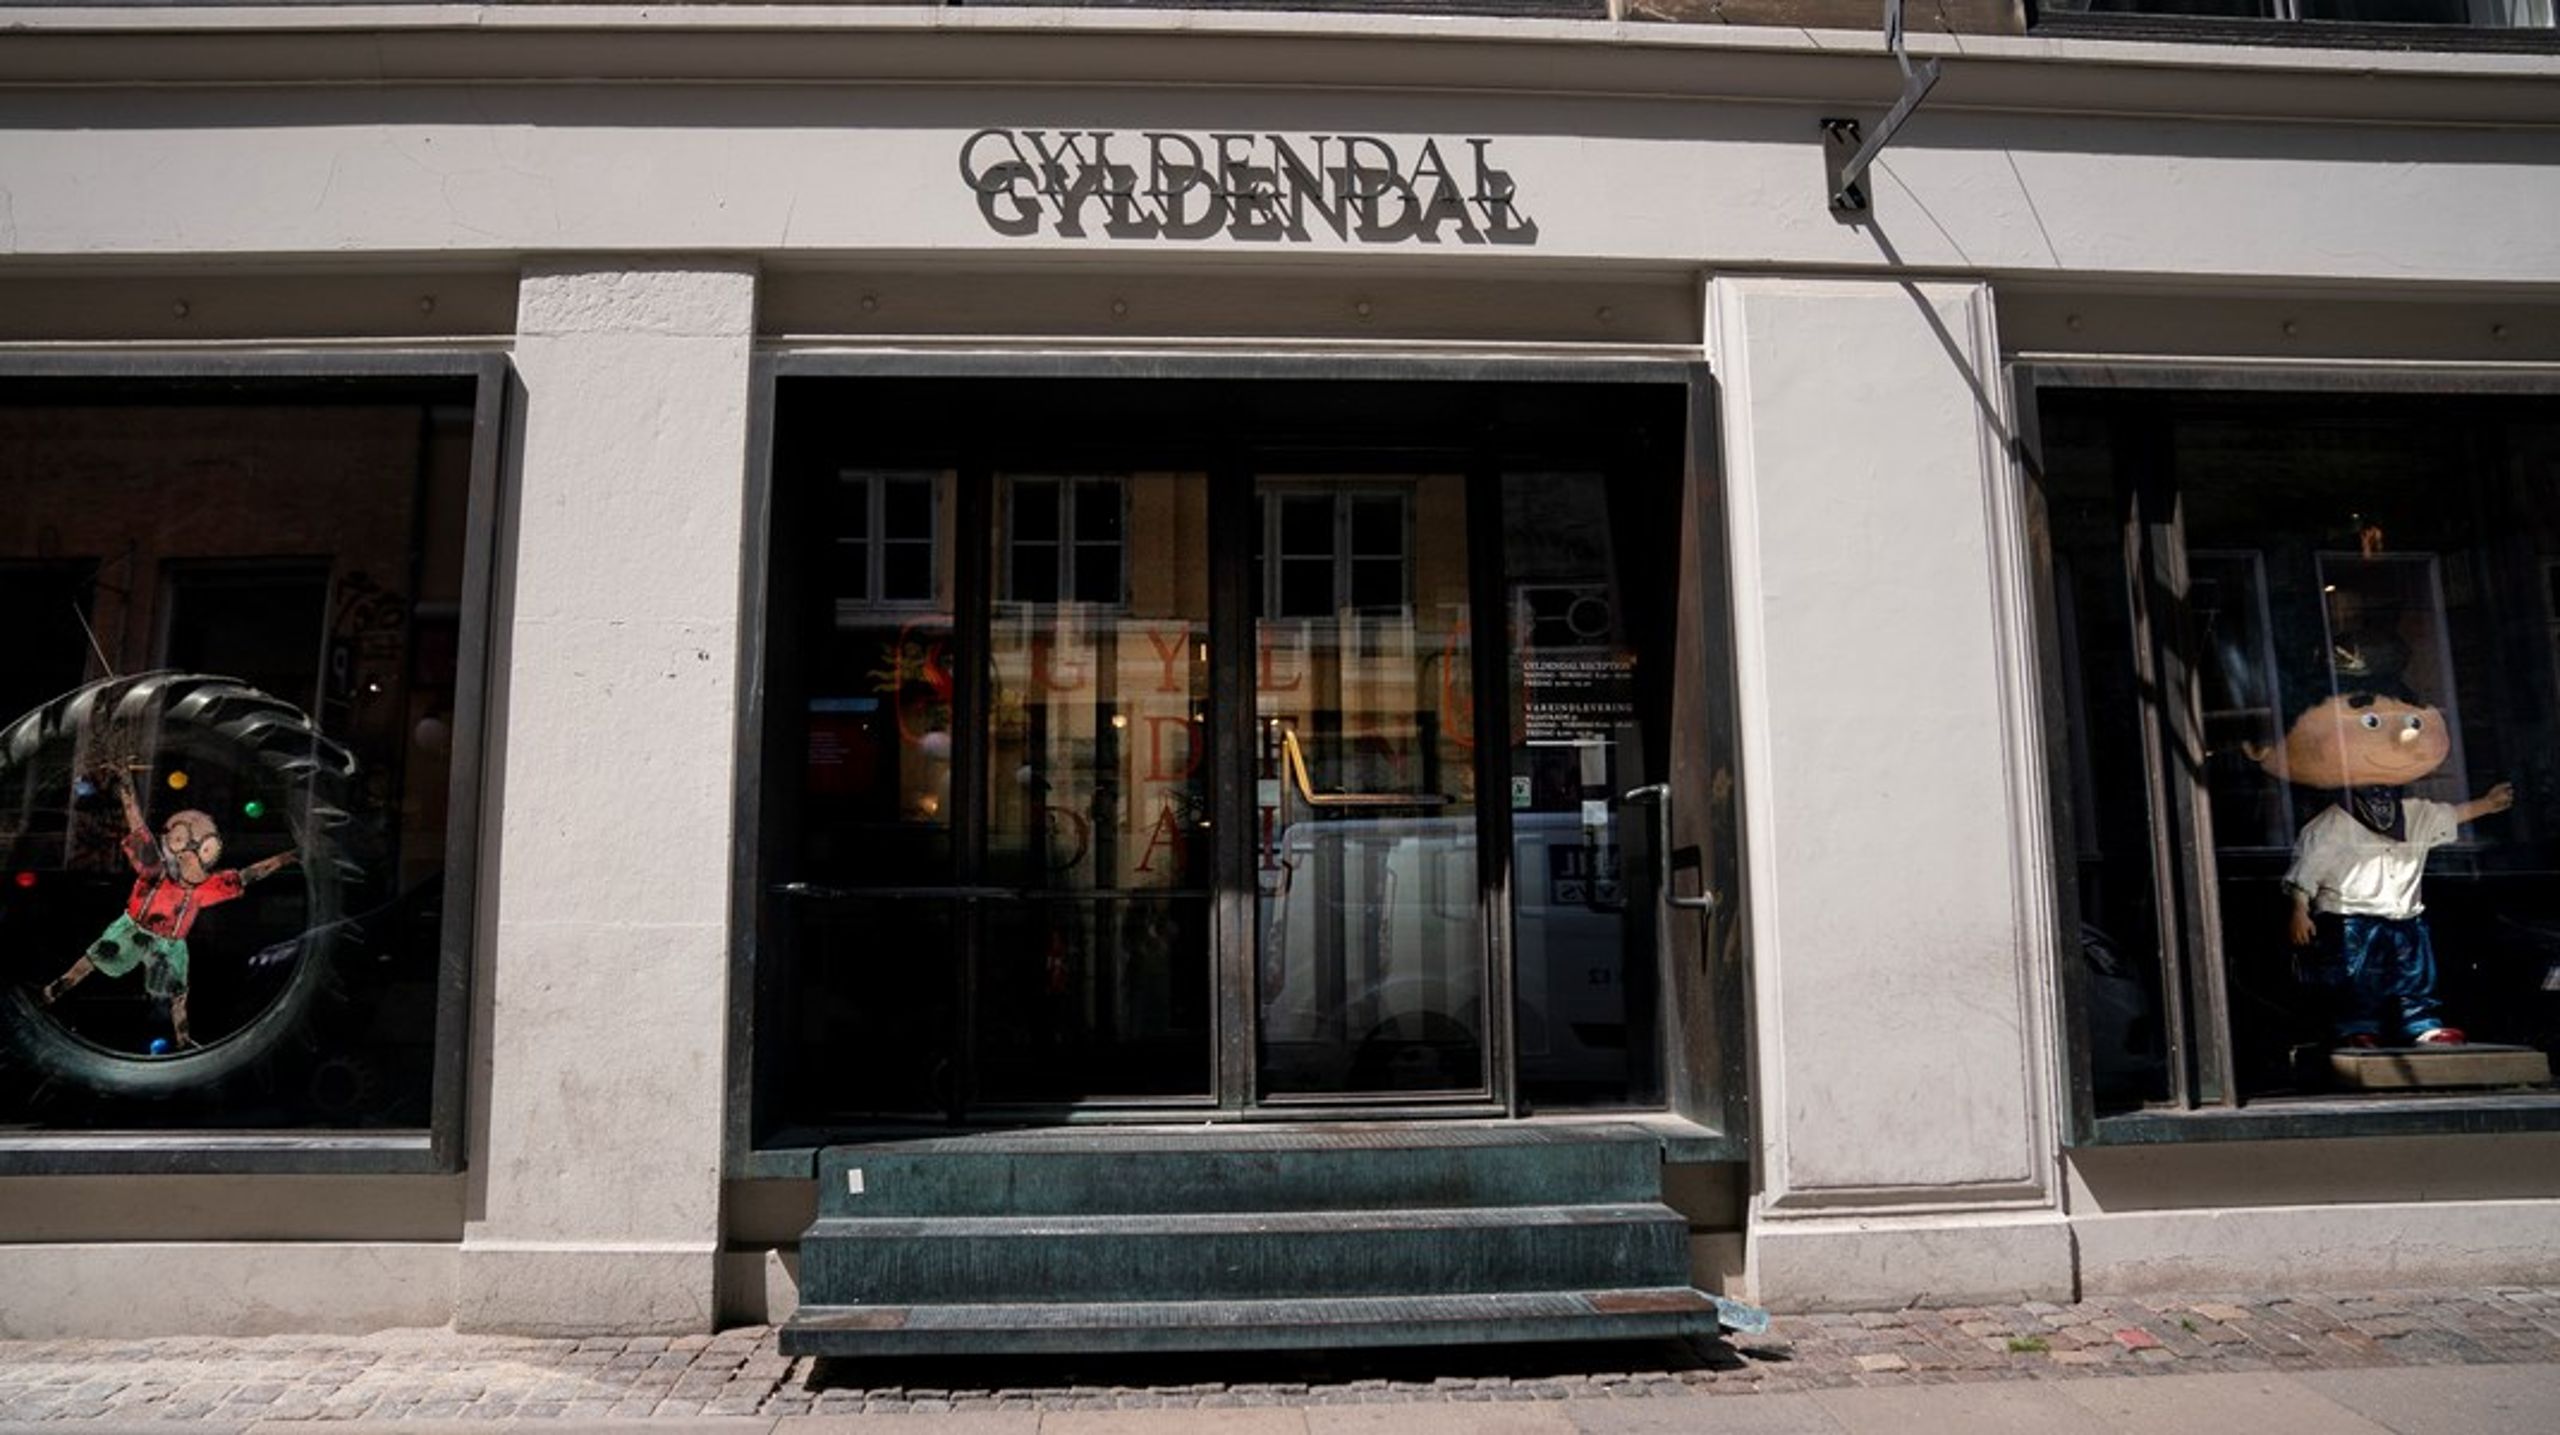 Forlaget Gyldendal leder efter en ny direktør for forlaget, efter Bjarne Ponikowski forlader forlaget.